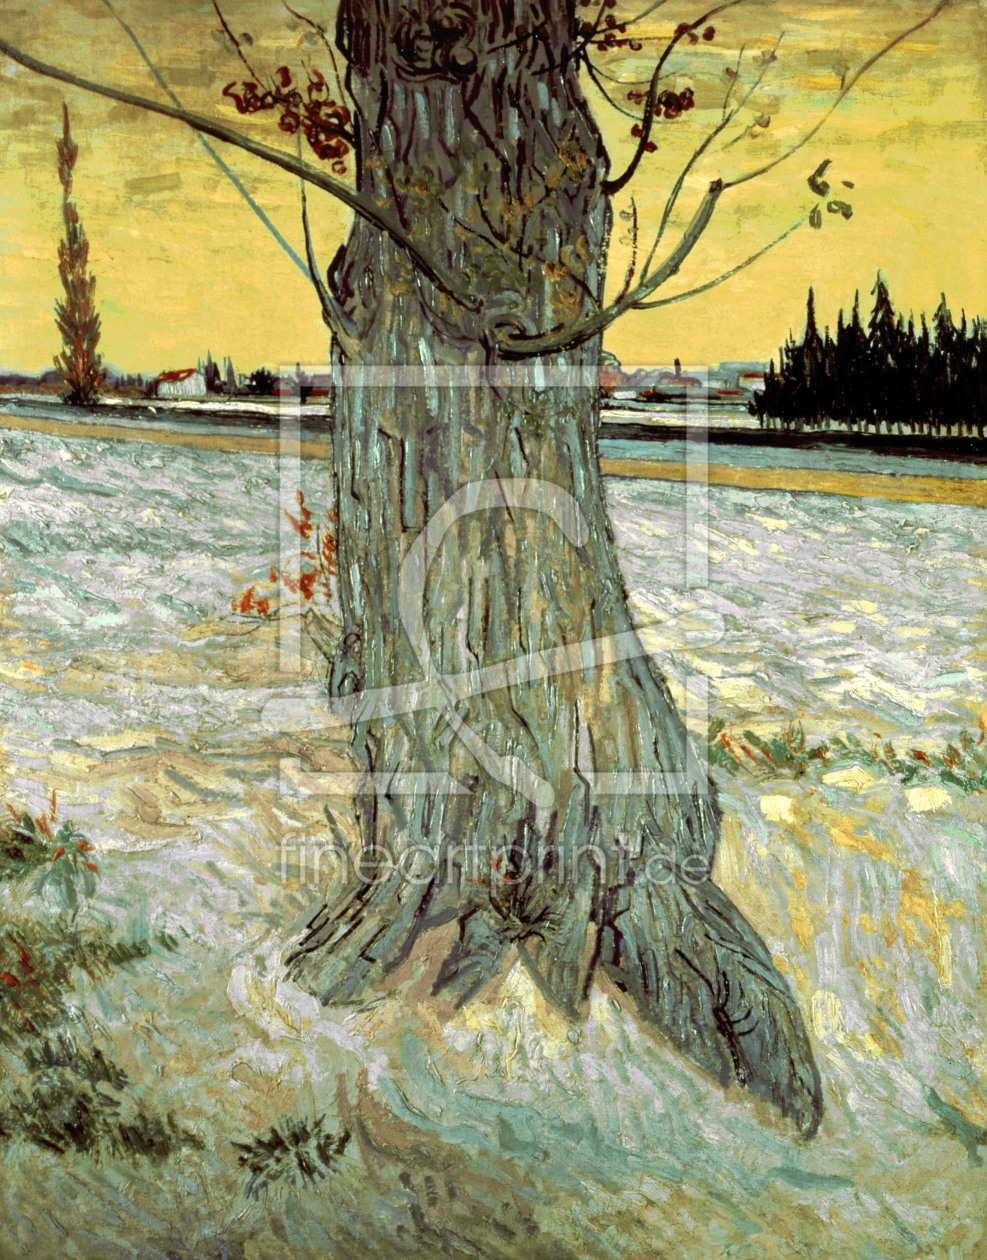 Bild-Nr.: 30003464 van Gogh / The Tree / 1888 erstellt von van Gogh, Vincent